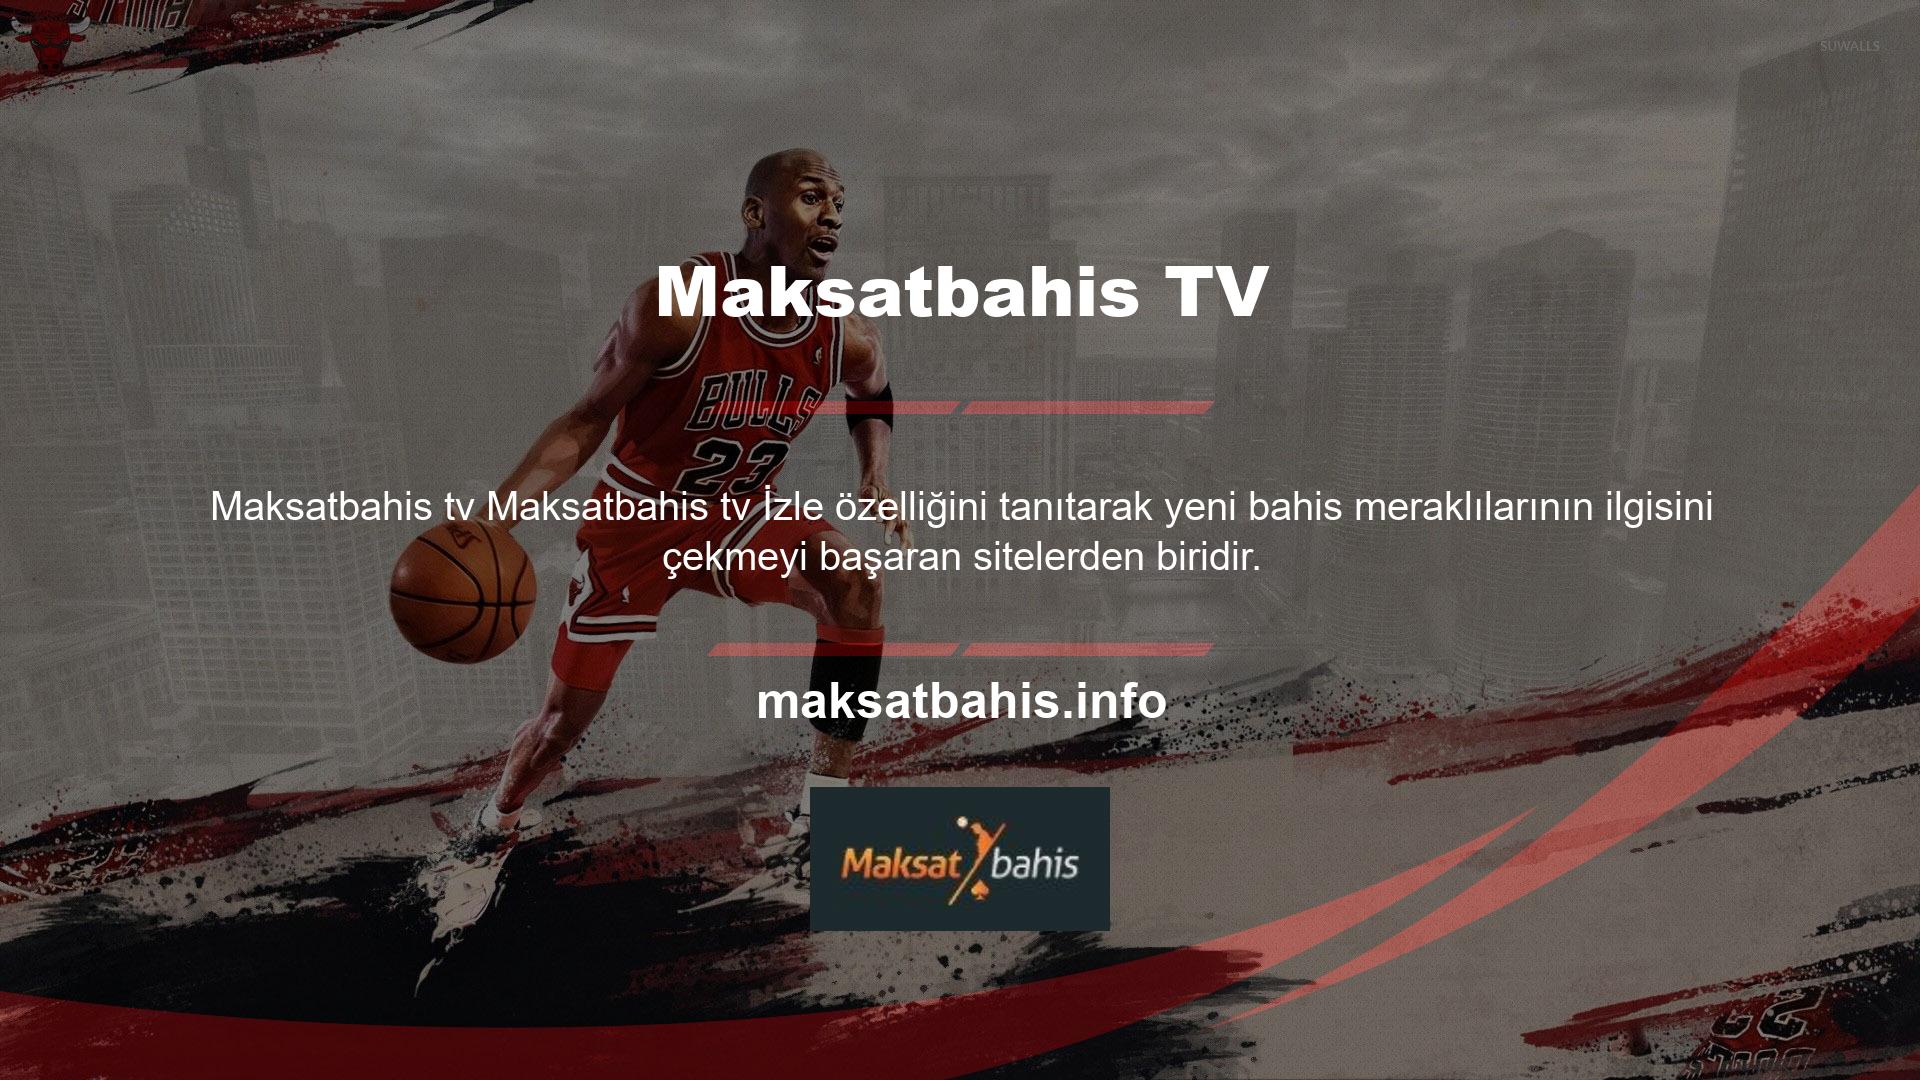 Maksatbahis tv izlemek için web sitesindeki "Maksatbahis TV" butonuna tıklamanız yeterli